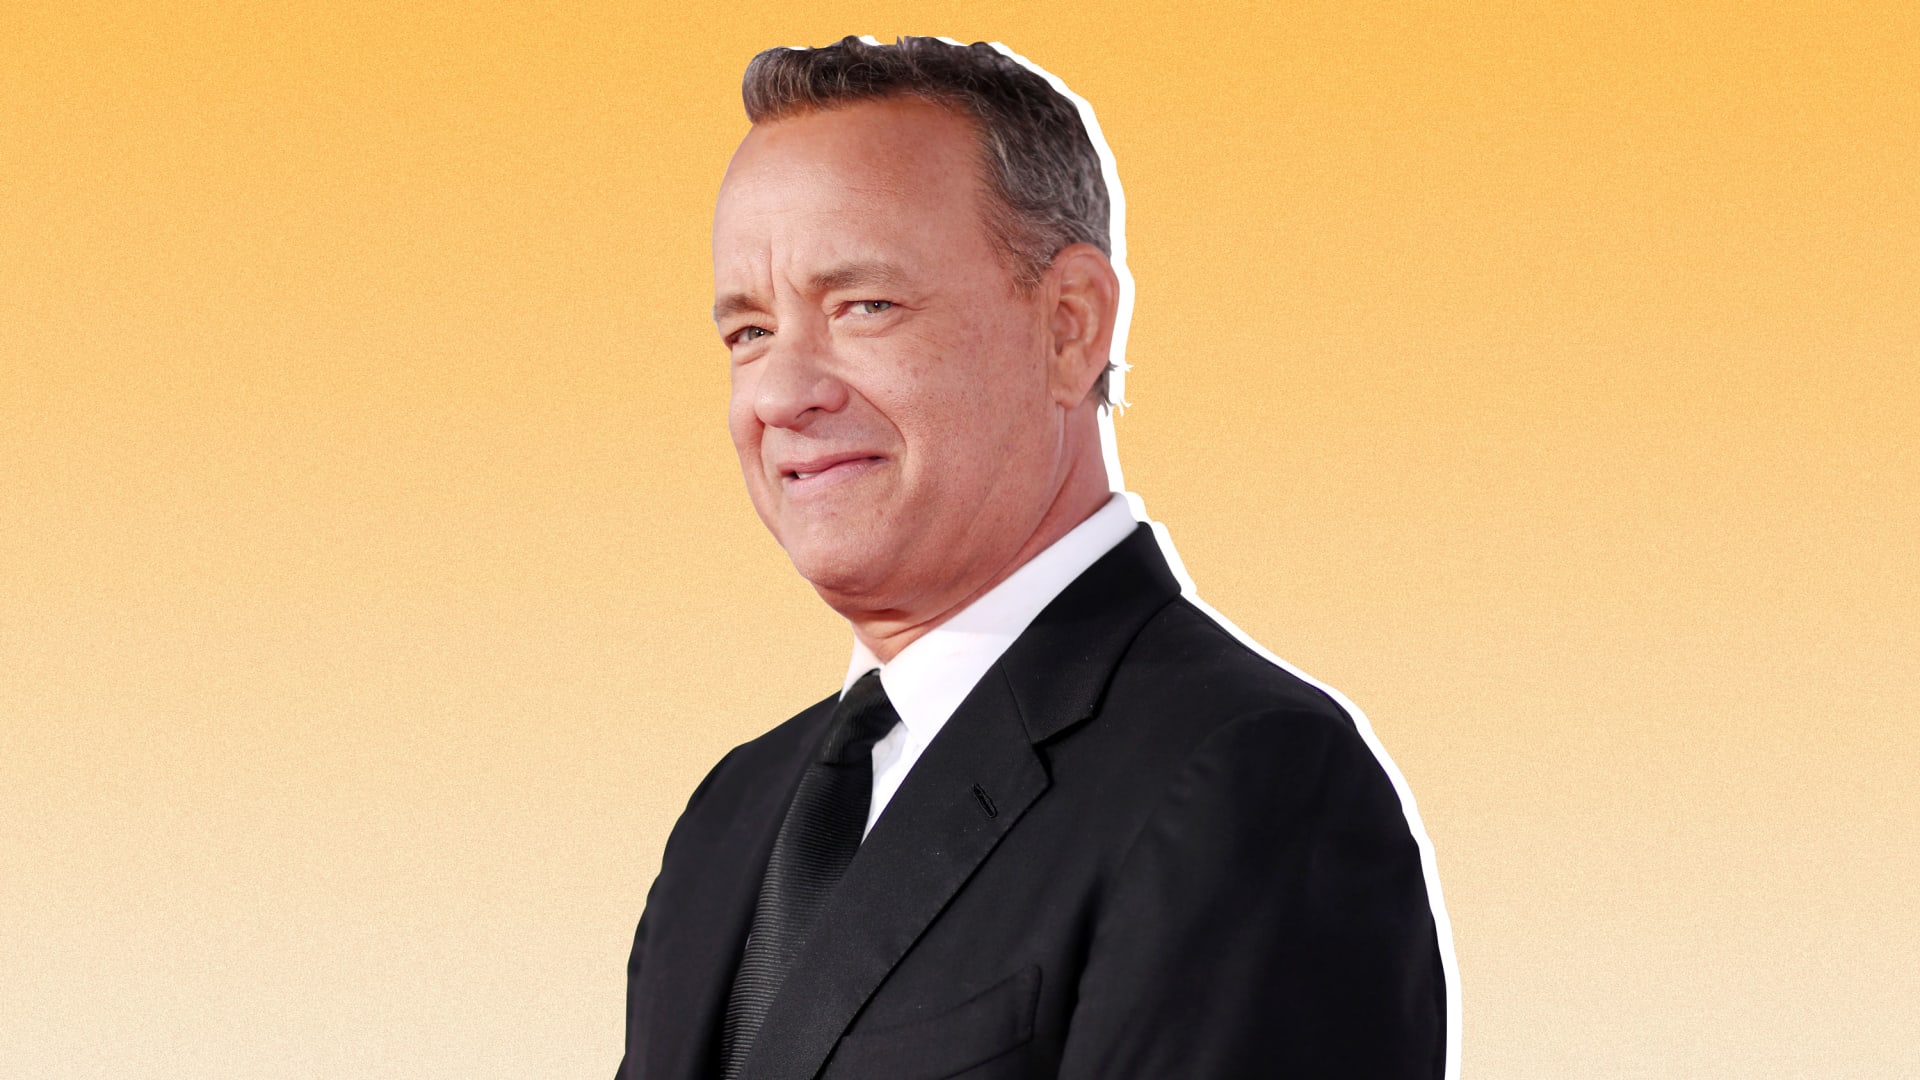 Tom Hanks.